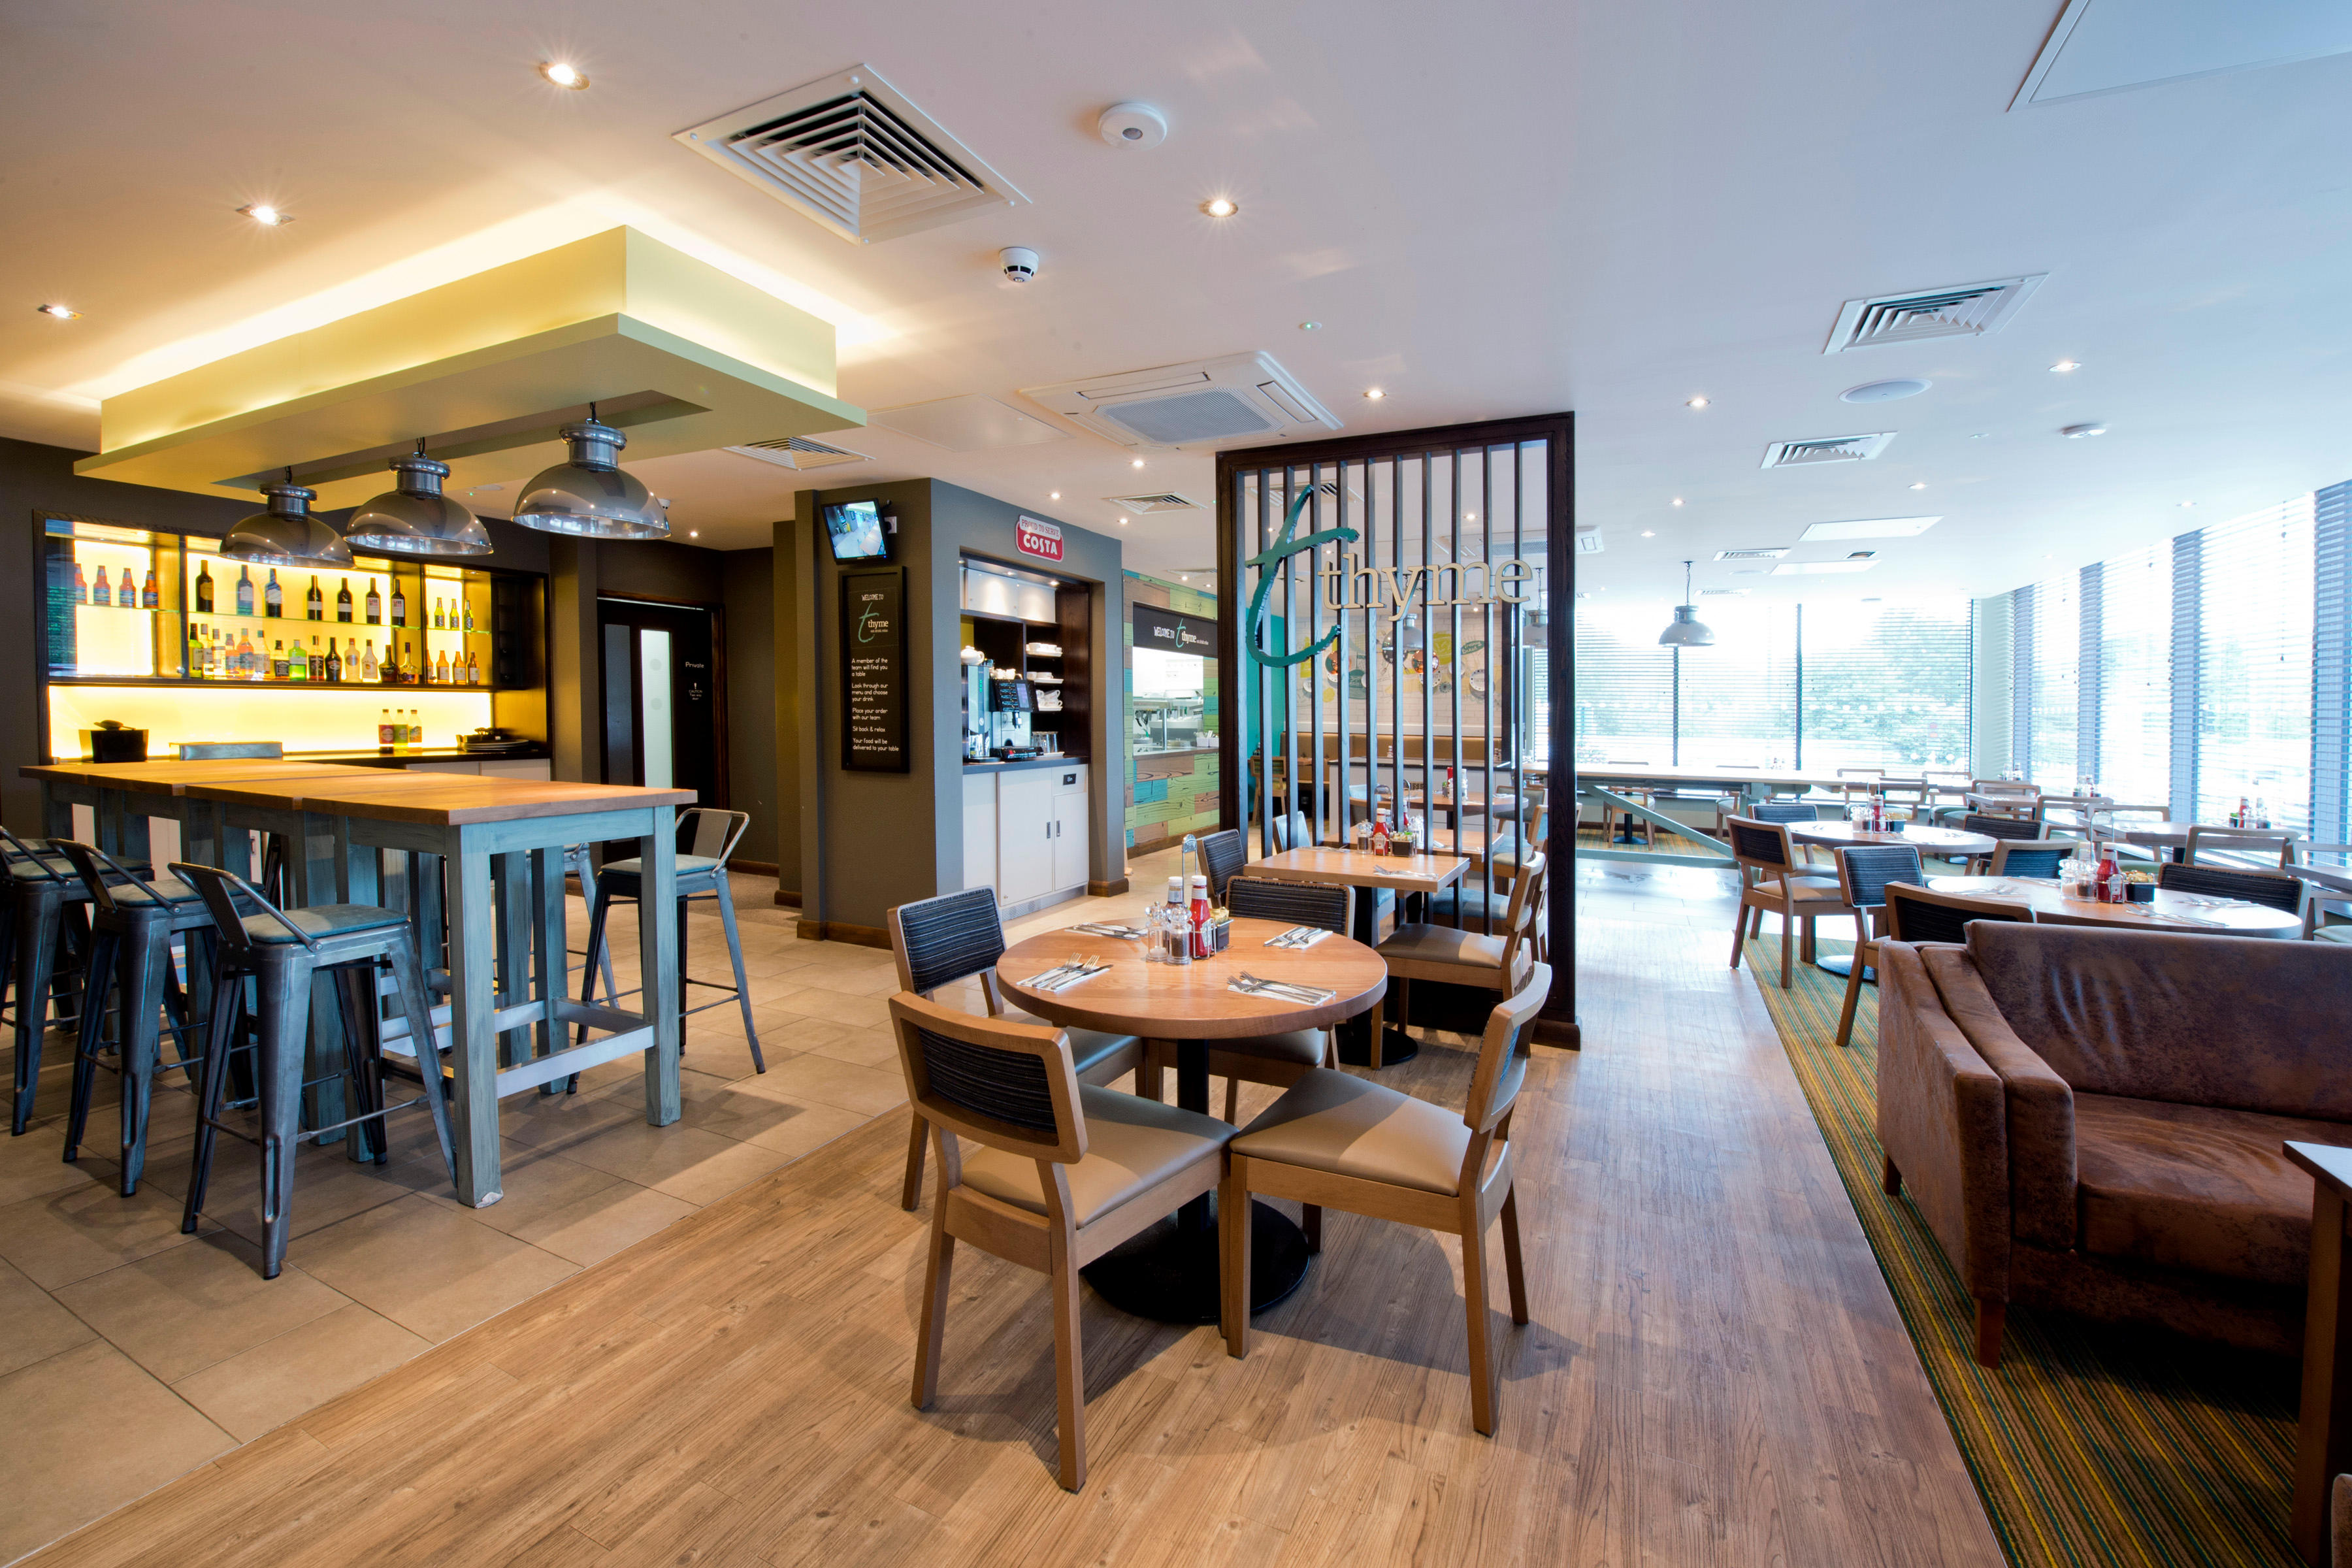 Thyme restaurant interior Premier Inn Matlock hotel Matlock 03332 346447